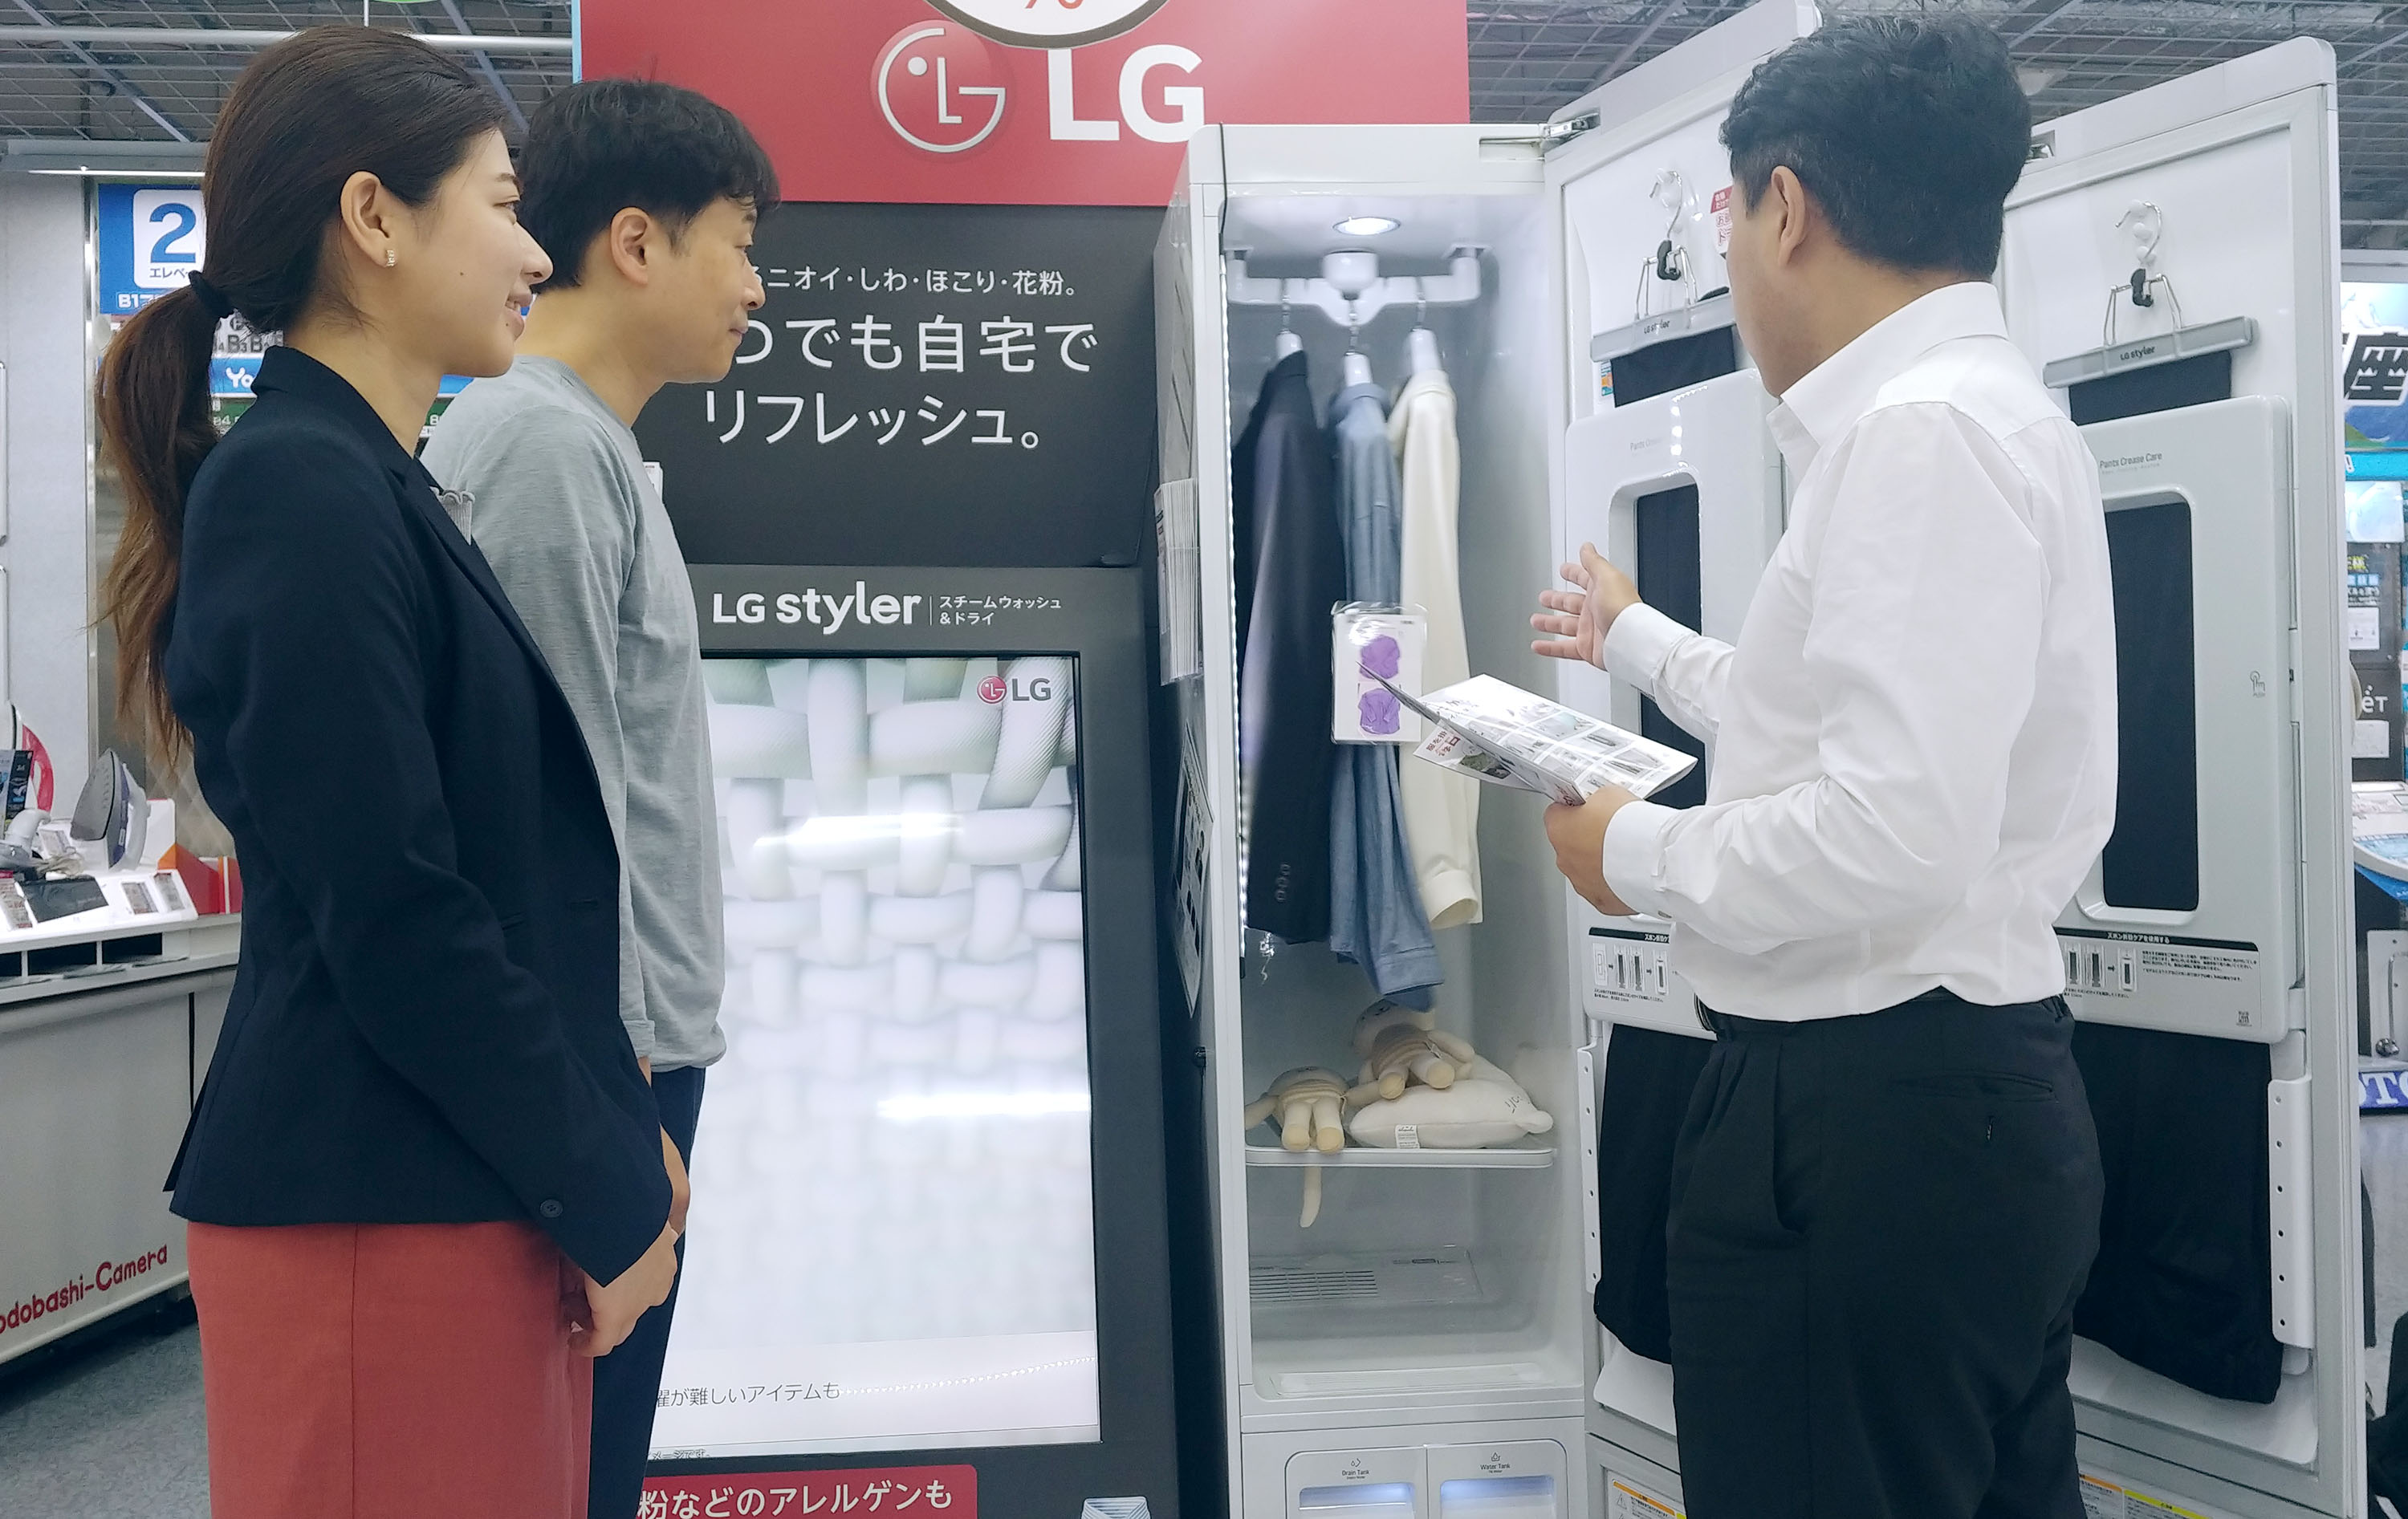 일본의 한 가전매장에서 직원이 고객에게 LG 트롬 스타일러를 소개하고 있다.